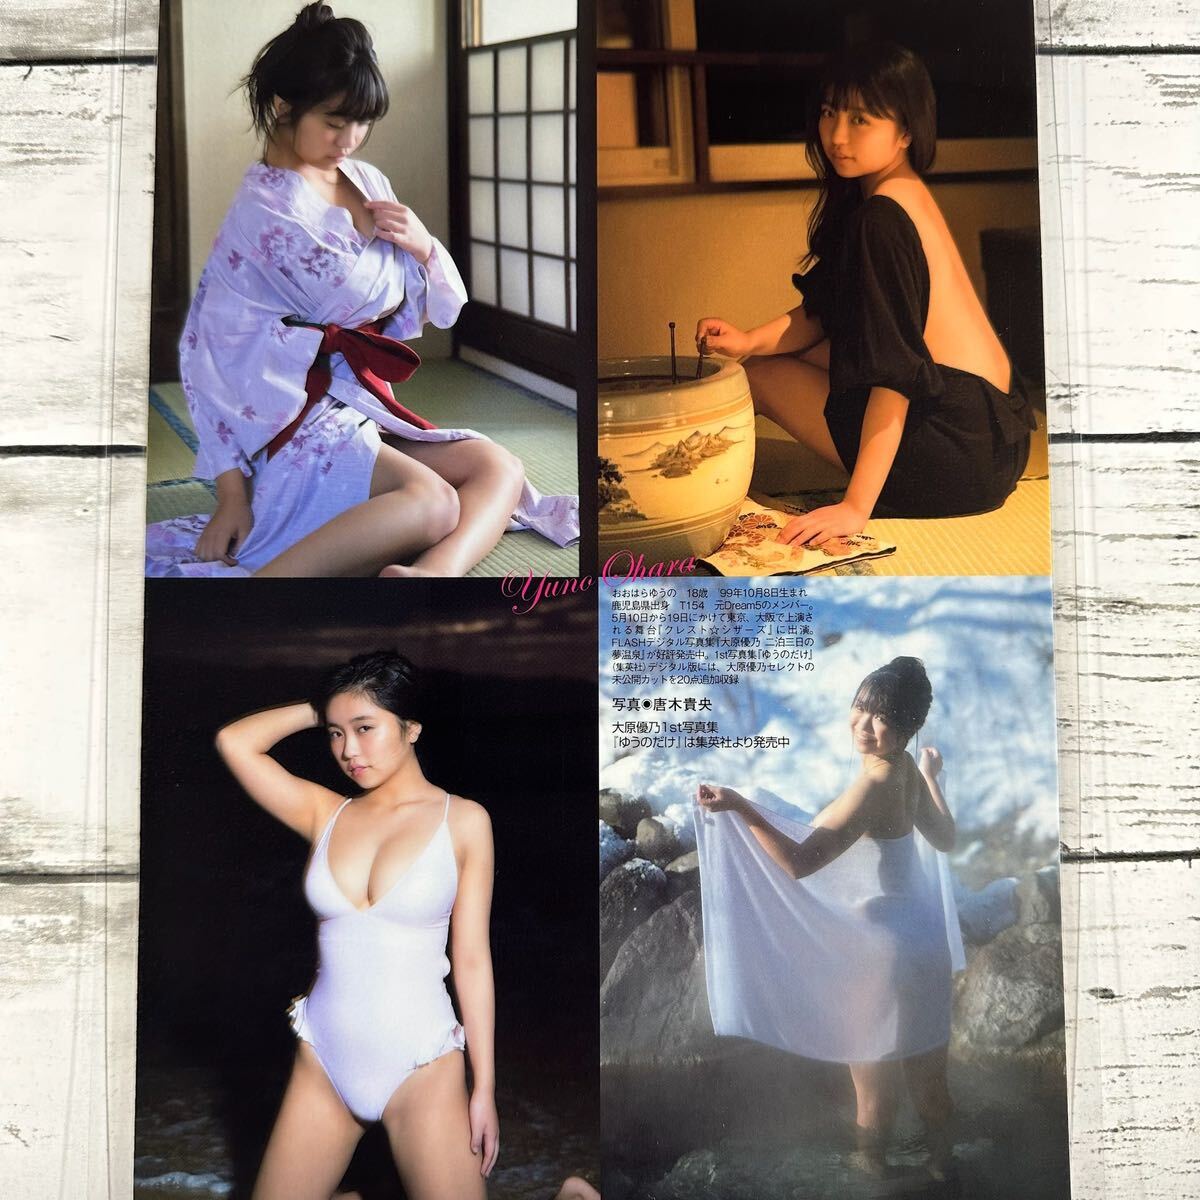 [ высокое качество ламинирование отделка ][ большой . super .] FLASH 2018 год 4/17 журнал вырезки 5P A4 плёнка купальный костюм bikini model актер женщина super 